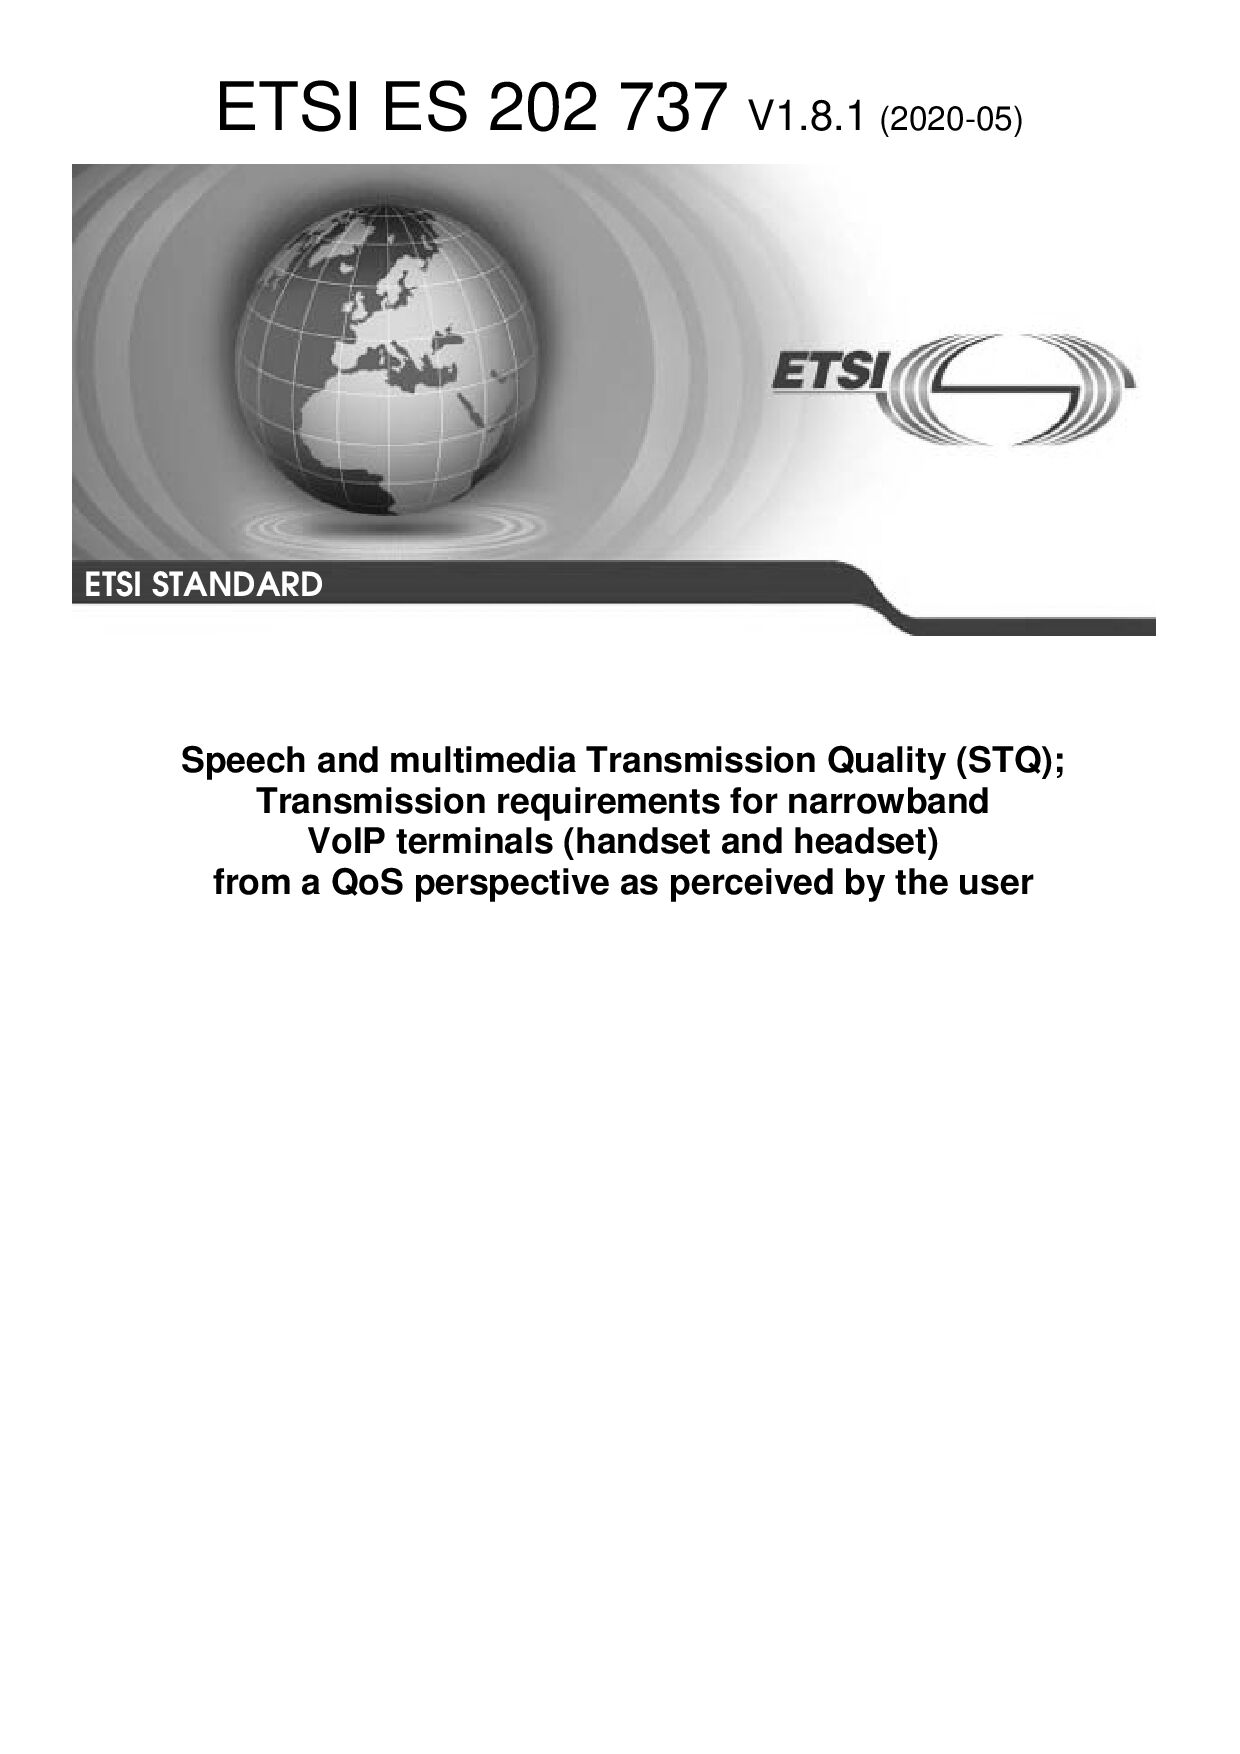 ETSI ES 202 737 V1.8.1 (2020-05)封面图